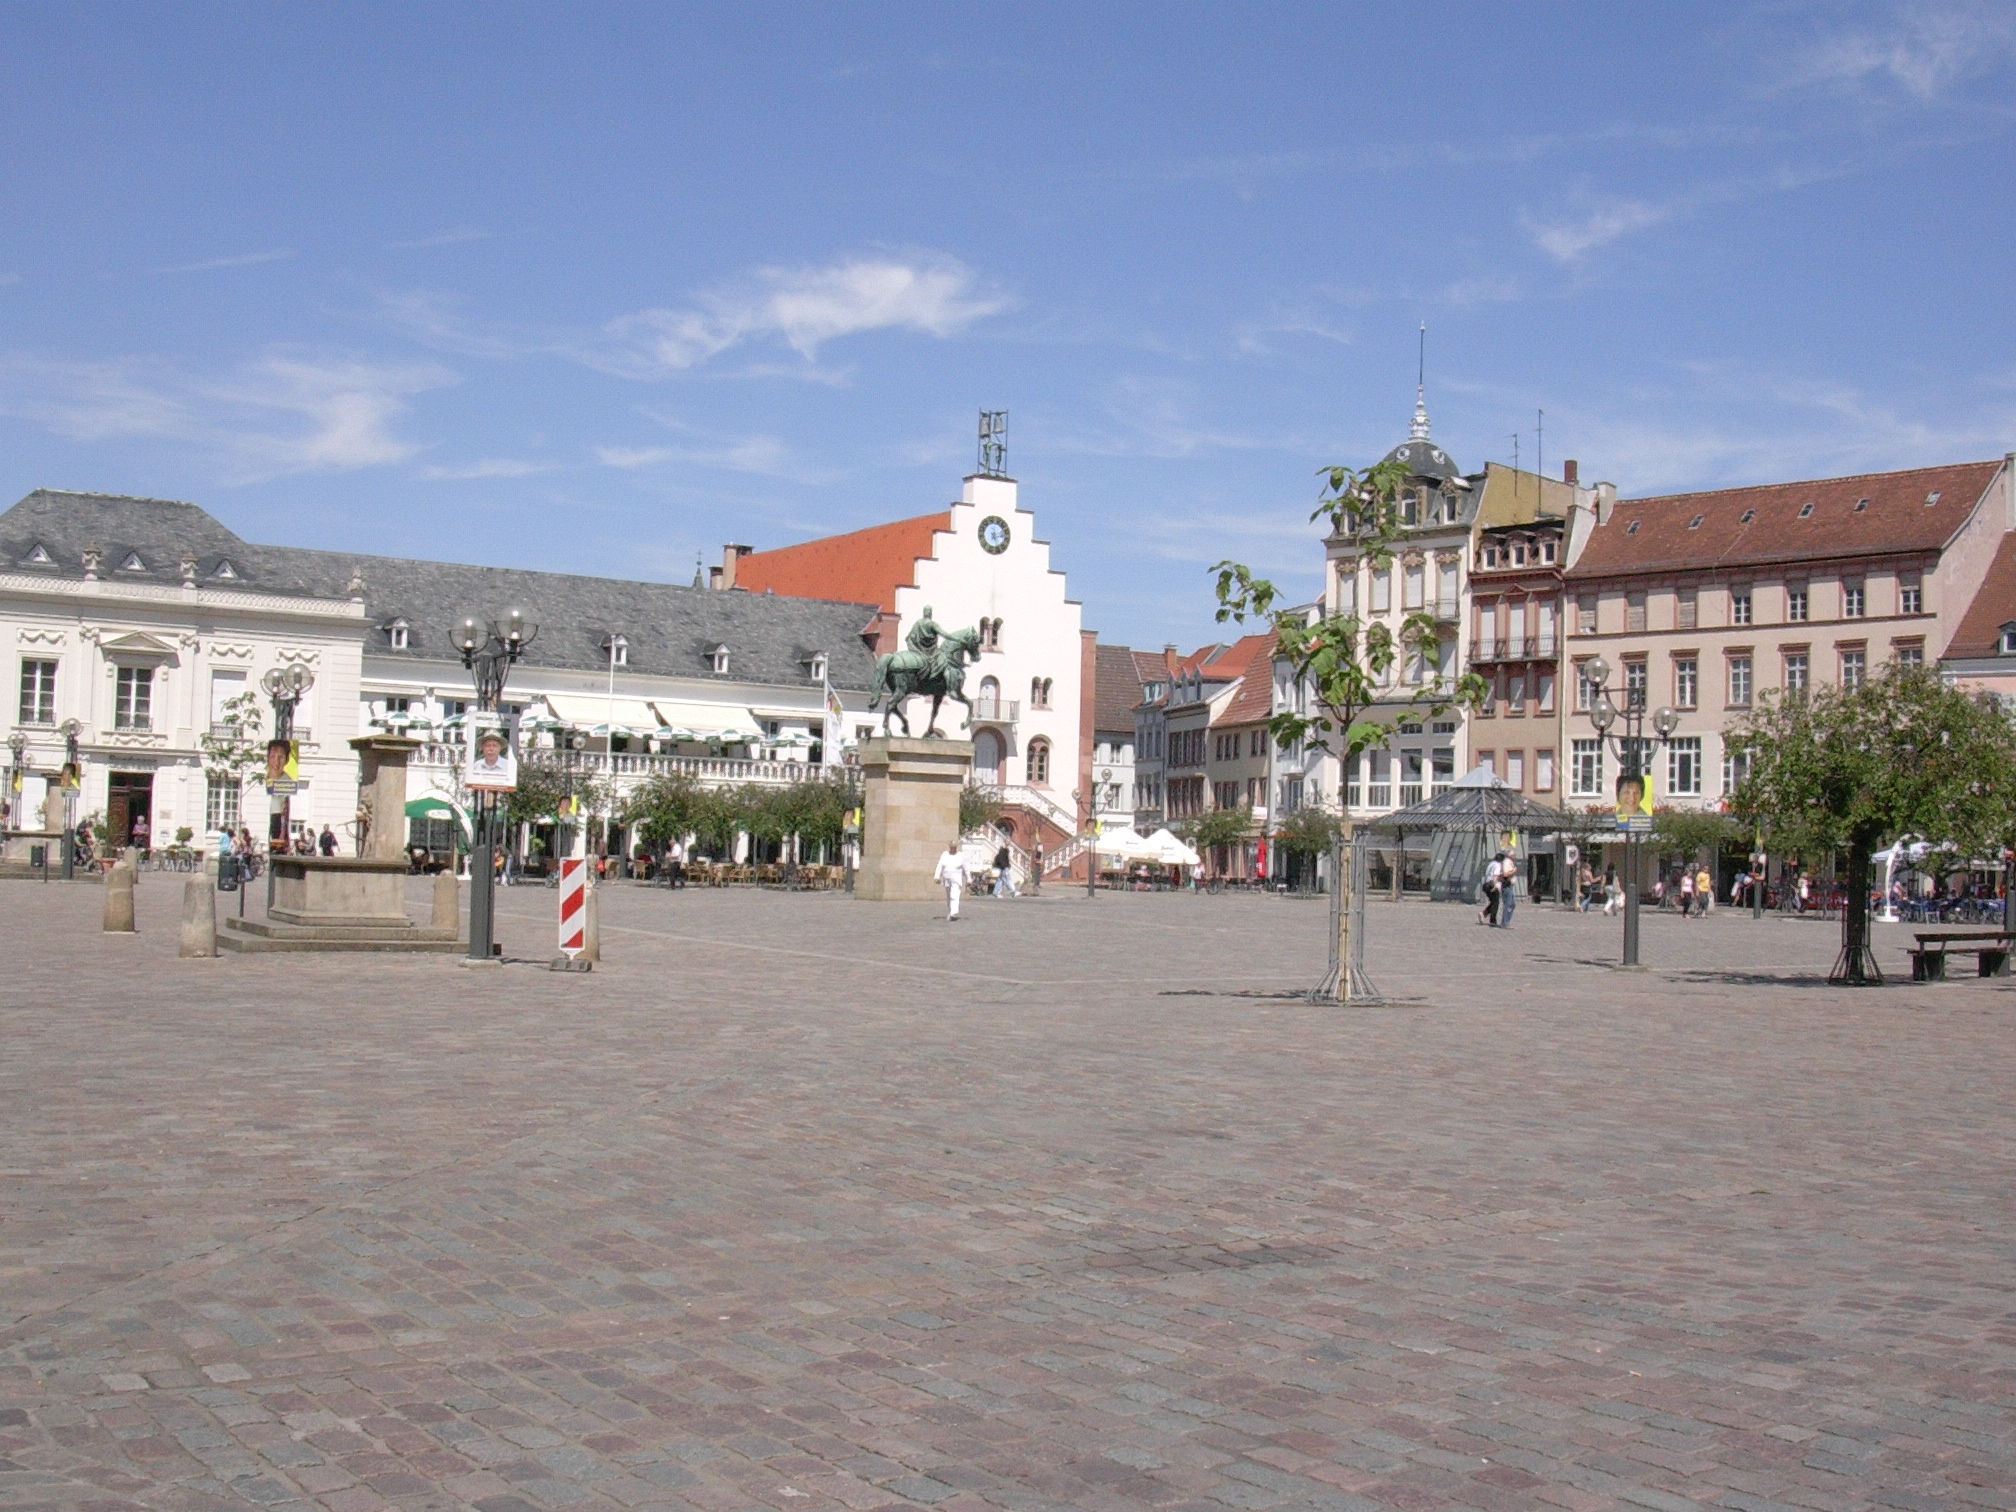 Der Rathausplatz mit Reiterstatue